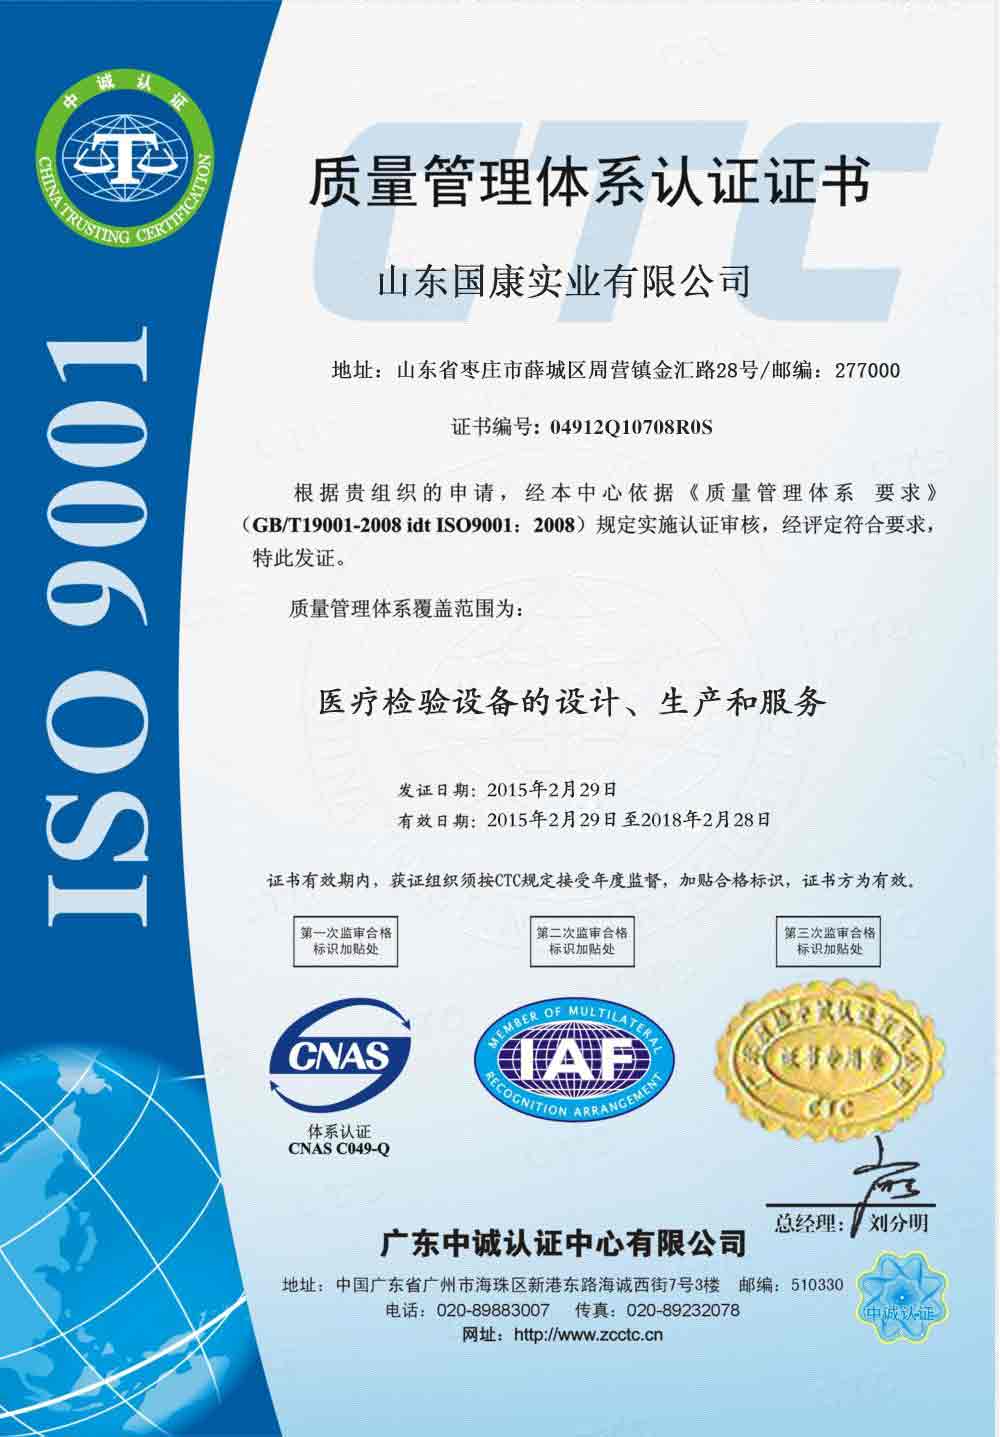 微量元素分析仪-ISO9001认证